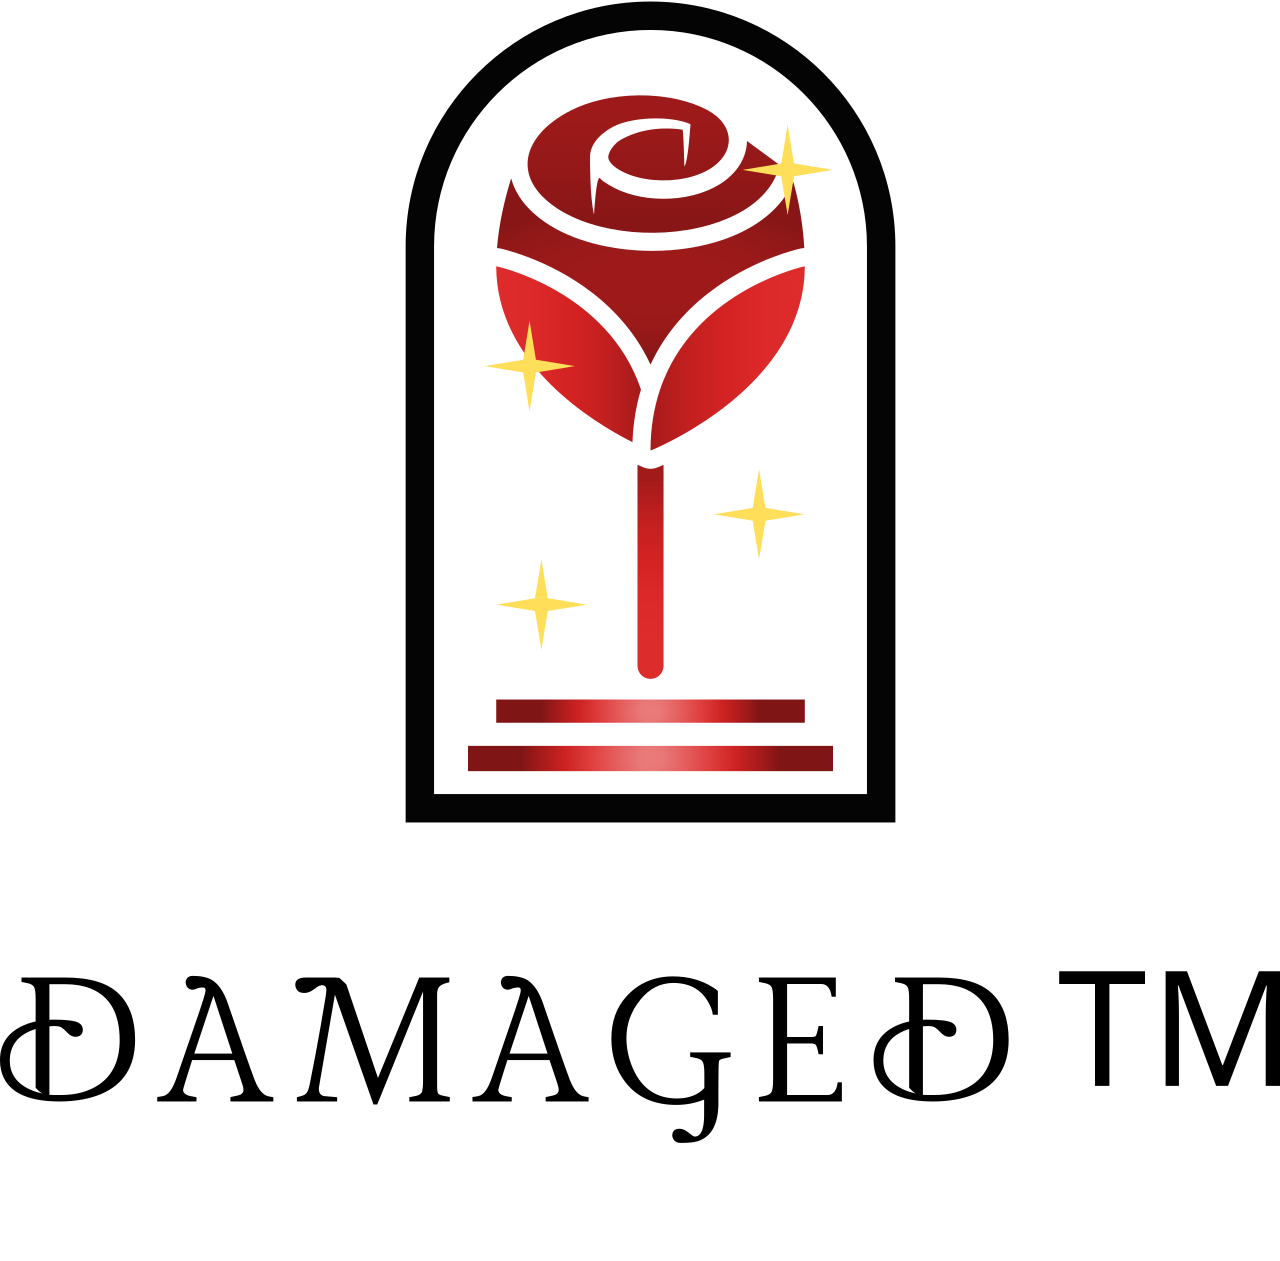 Damaged™️'s logo